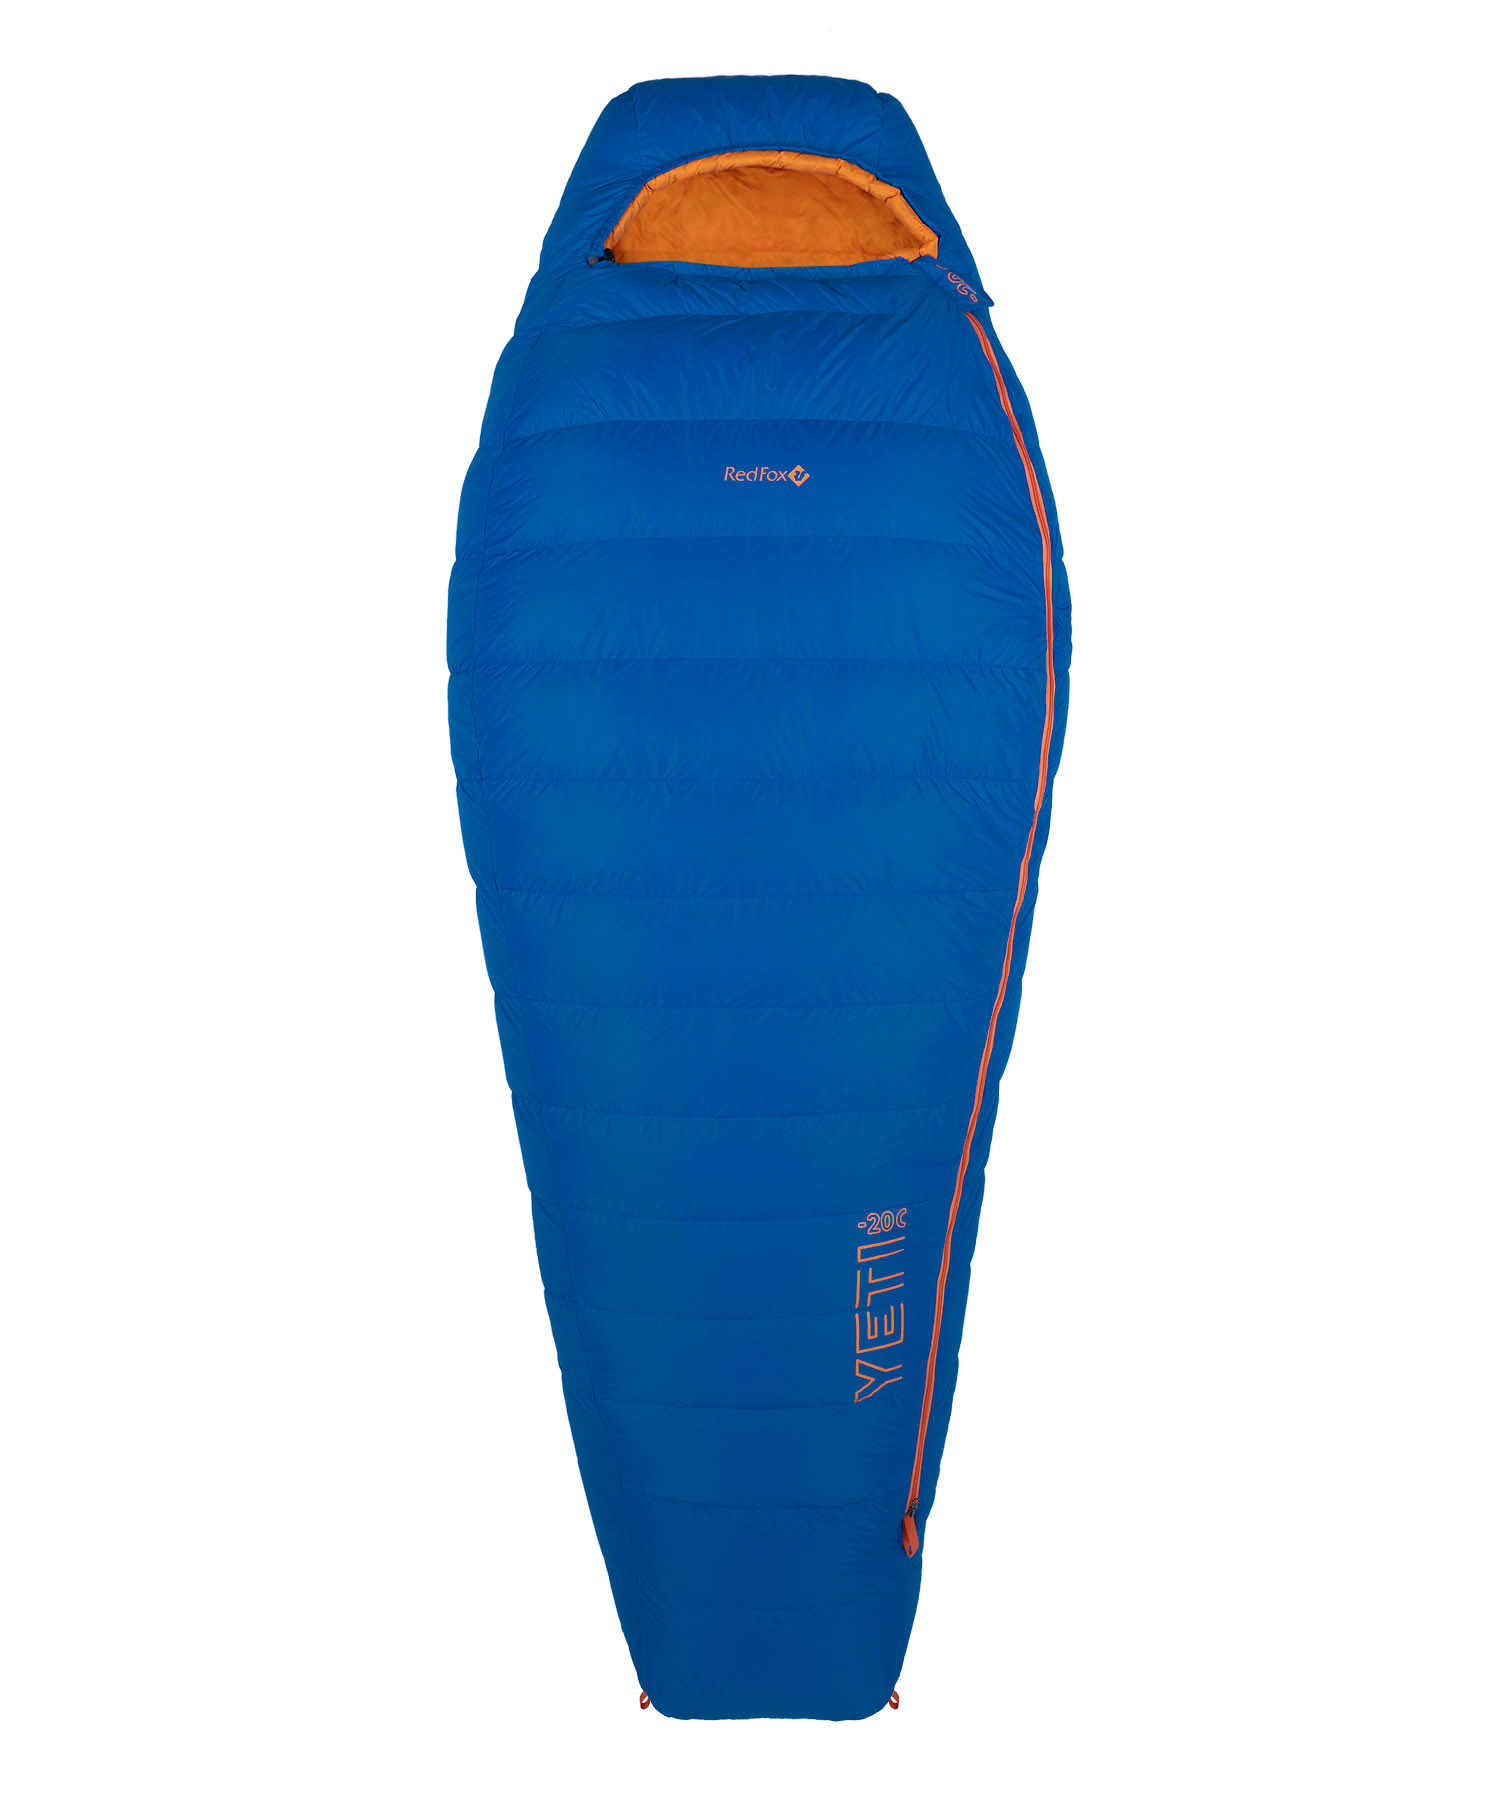 Спальный мешок Red Fox Yeti минус 20C Regular, синий,оранж правый